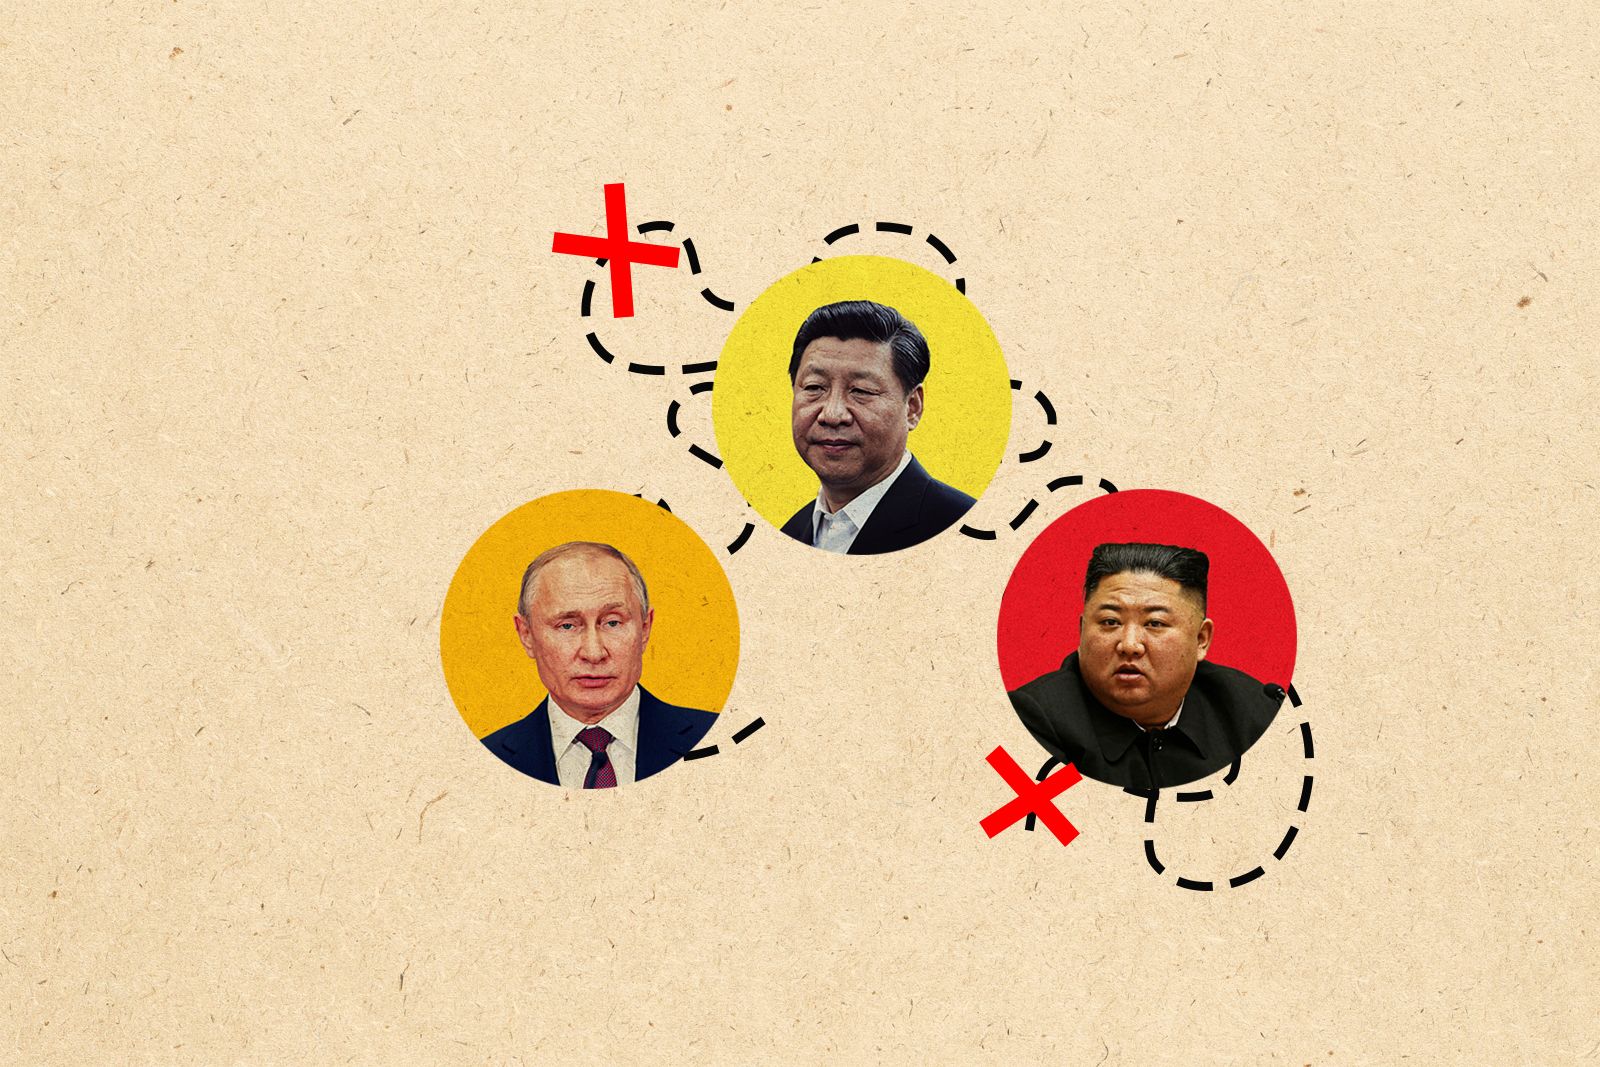 Vladimir Putin, Xi Jinping, Kim Jong-Un